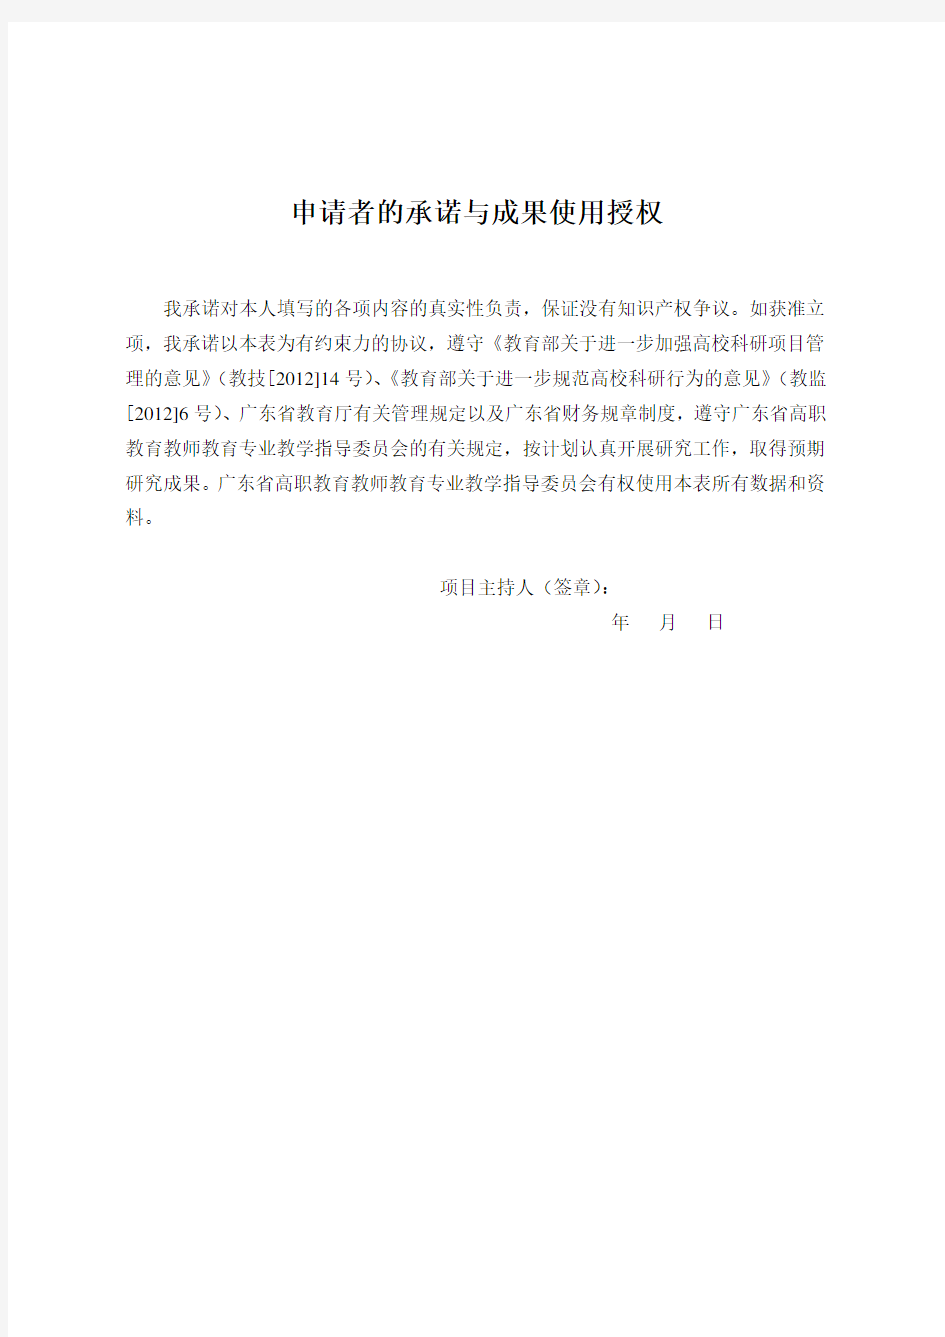 附1：广东省高职教育教师教育类专业教学指导委员会教改项目申请书